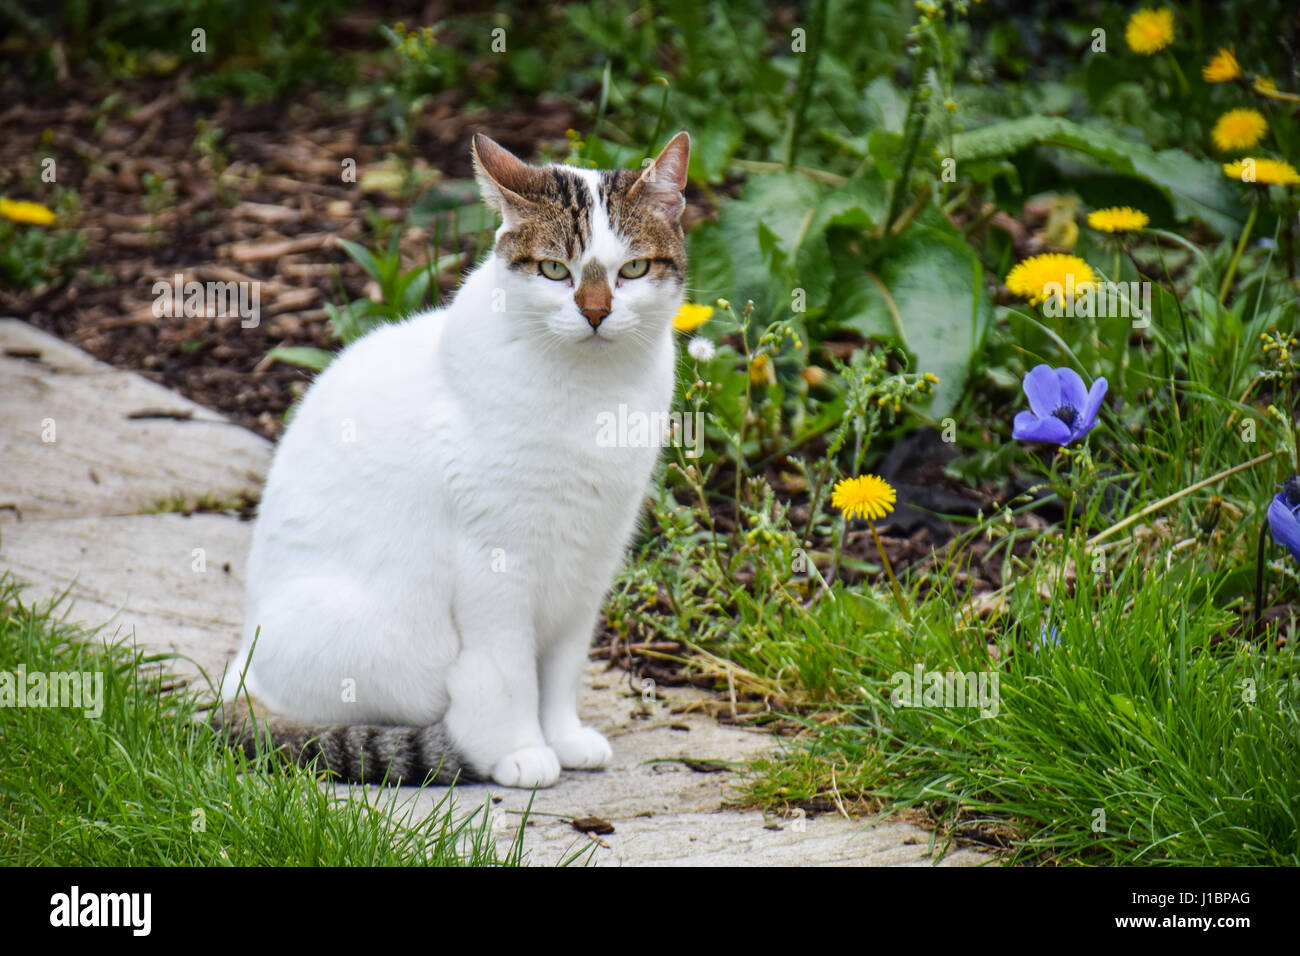 Cat in the garden Stock Photo